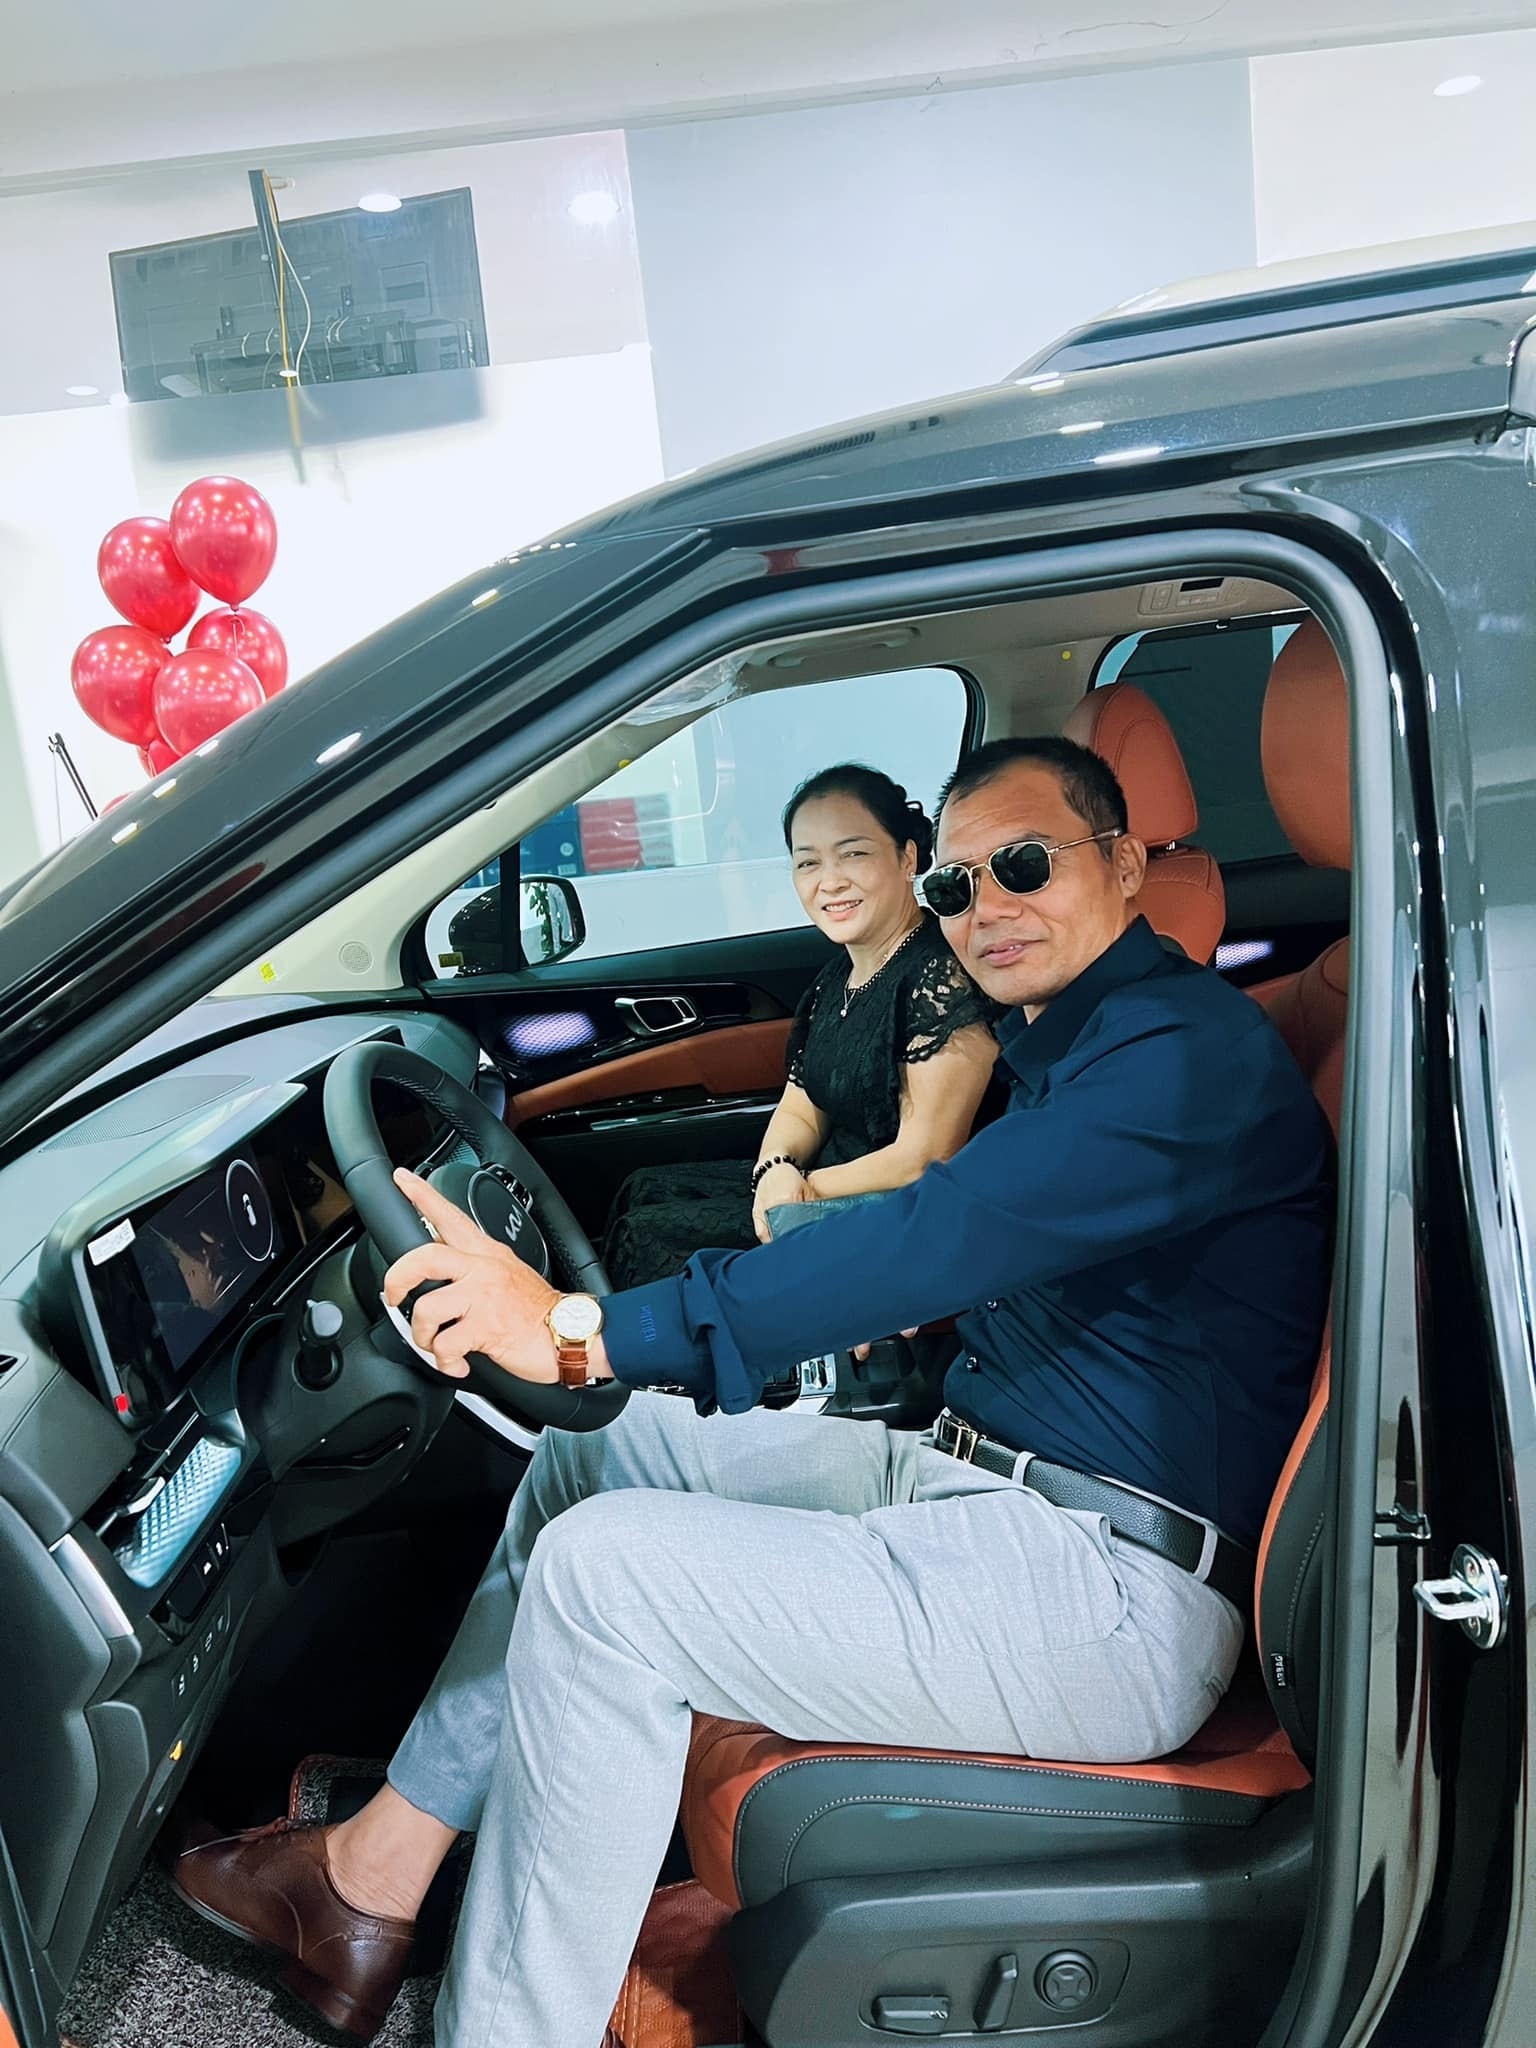 Nhiều sao Việt lựa chọn mua xe, xây nhà để báo hiếu công sinh thành của bố mẹ